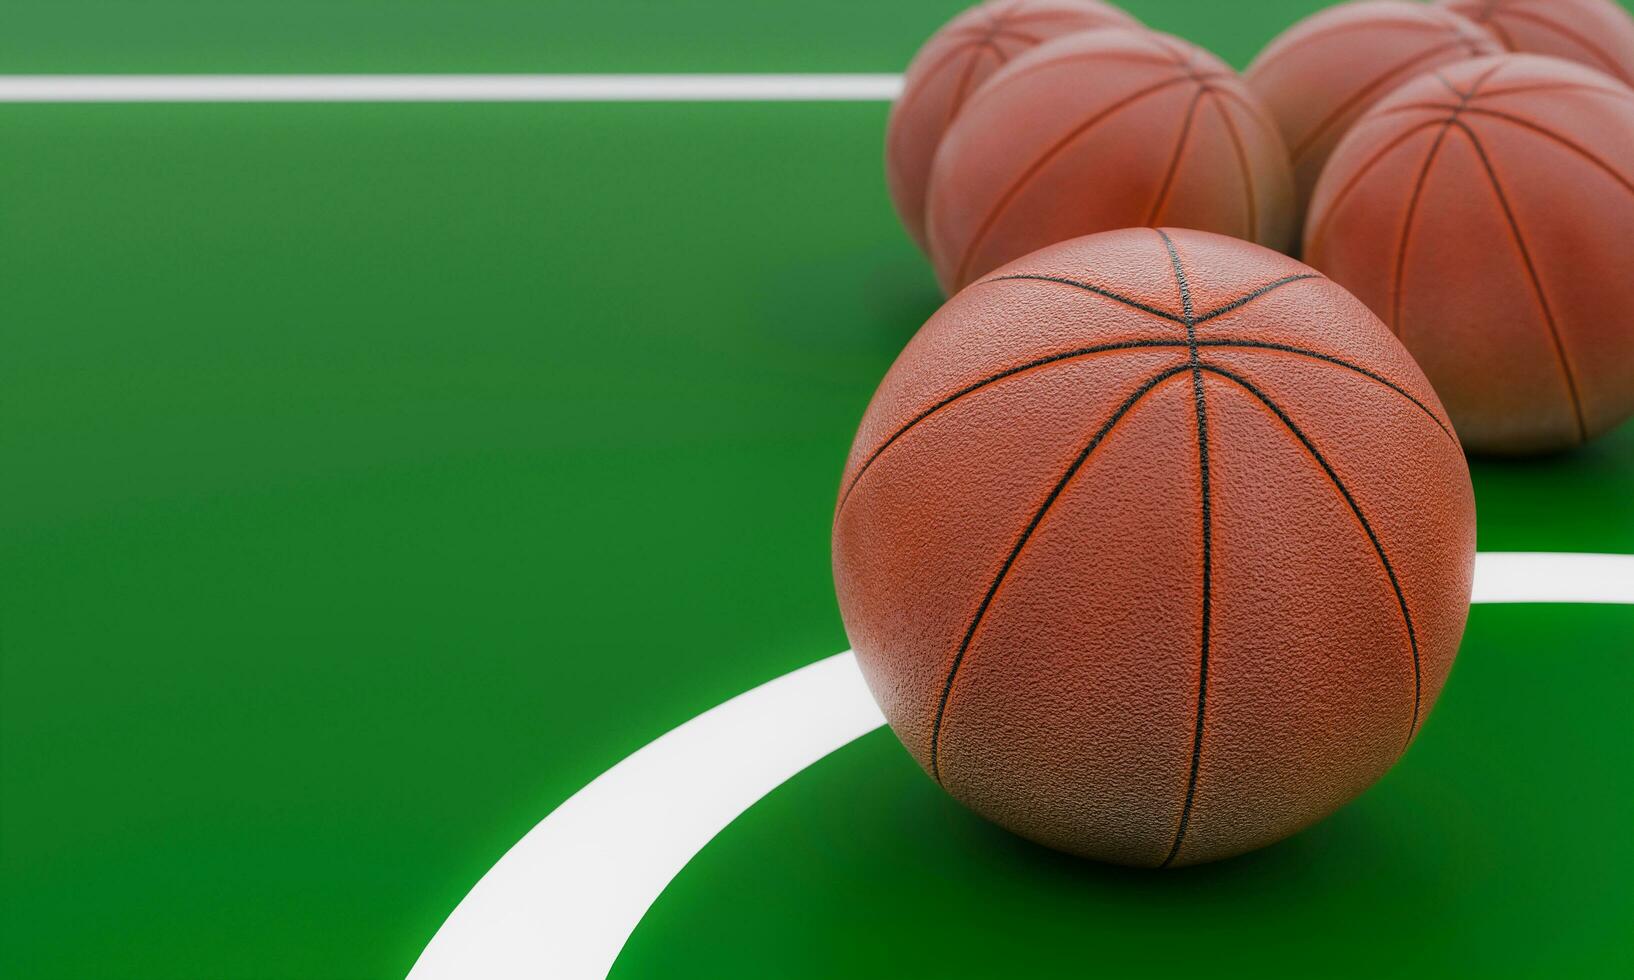 pelota de baloncesto colocada en el campo de juego verde. equipo de deportes de equipo. representación 3d foto